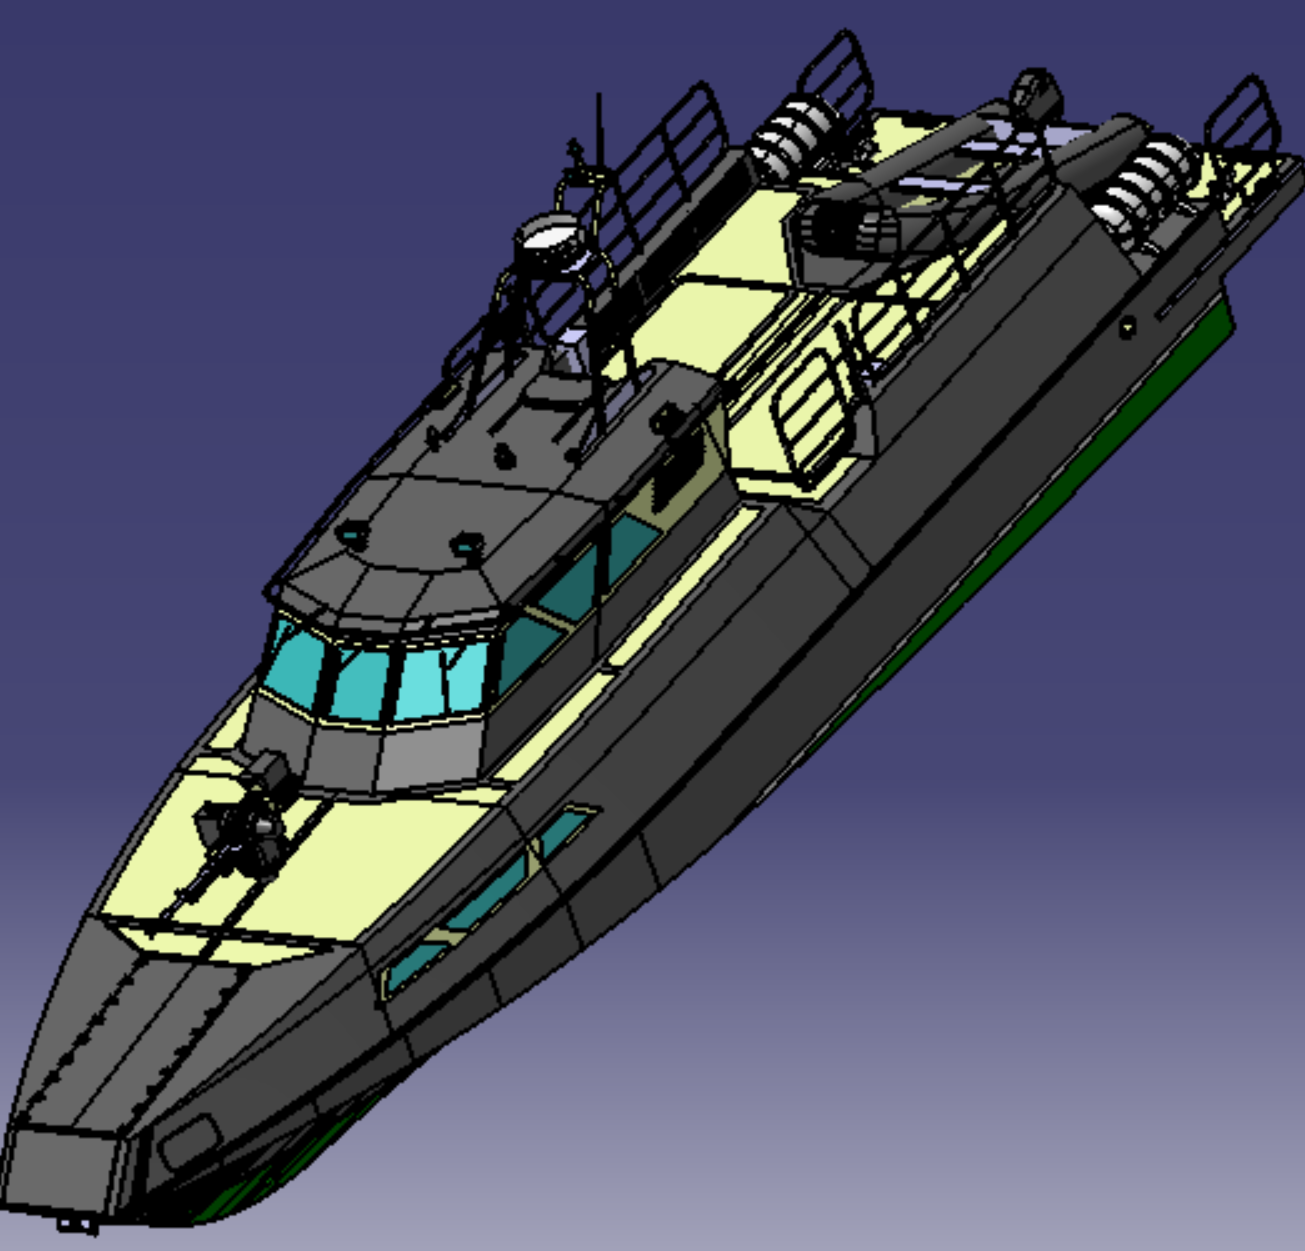 15米边防巡逻艇密封船舱快艇外观曲面3D三维几何数模型战斗舰船舶